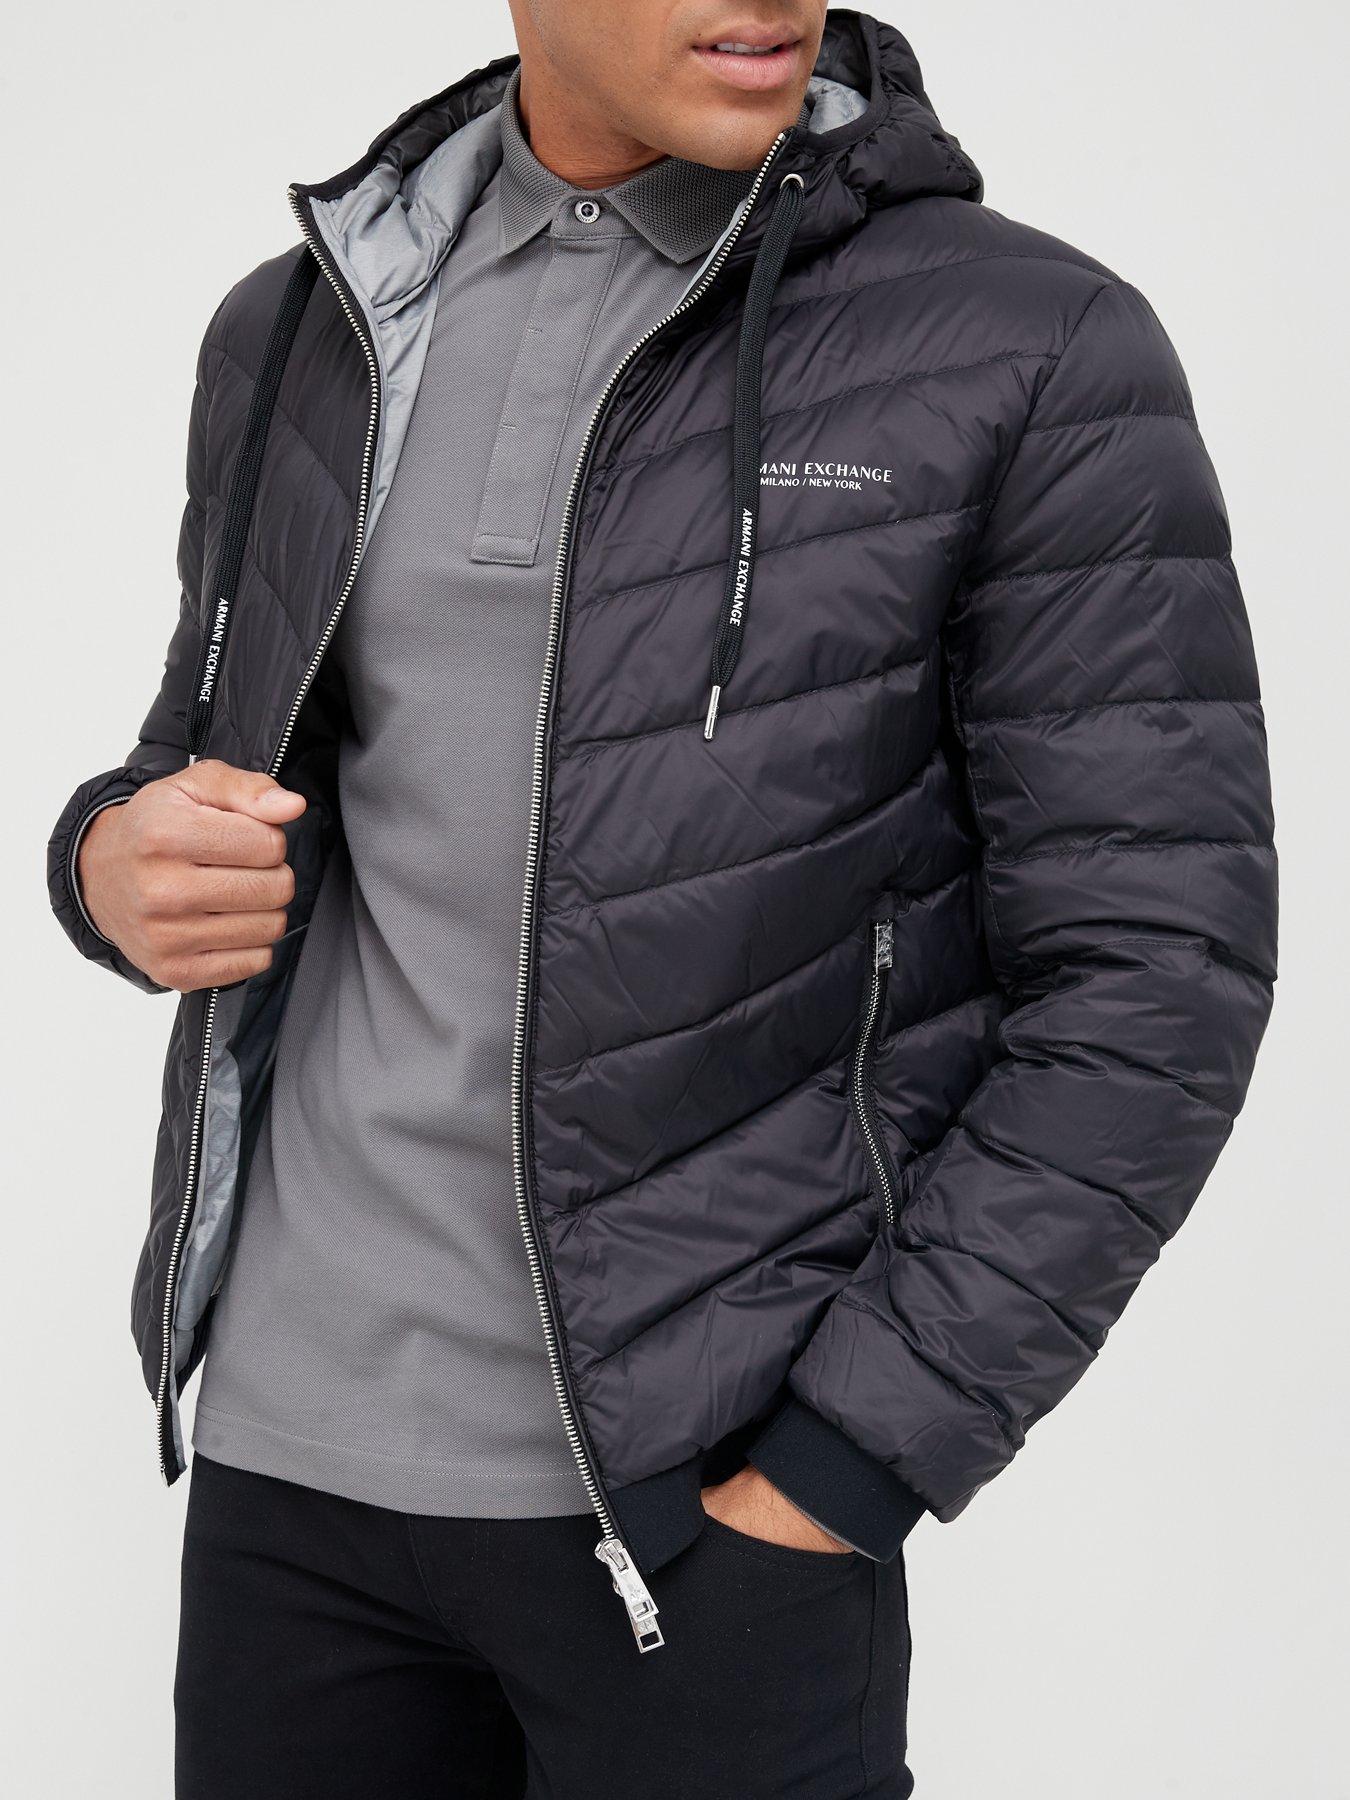 Armani exchange | Coats & jackets | Men 